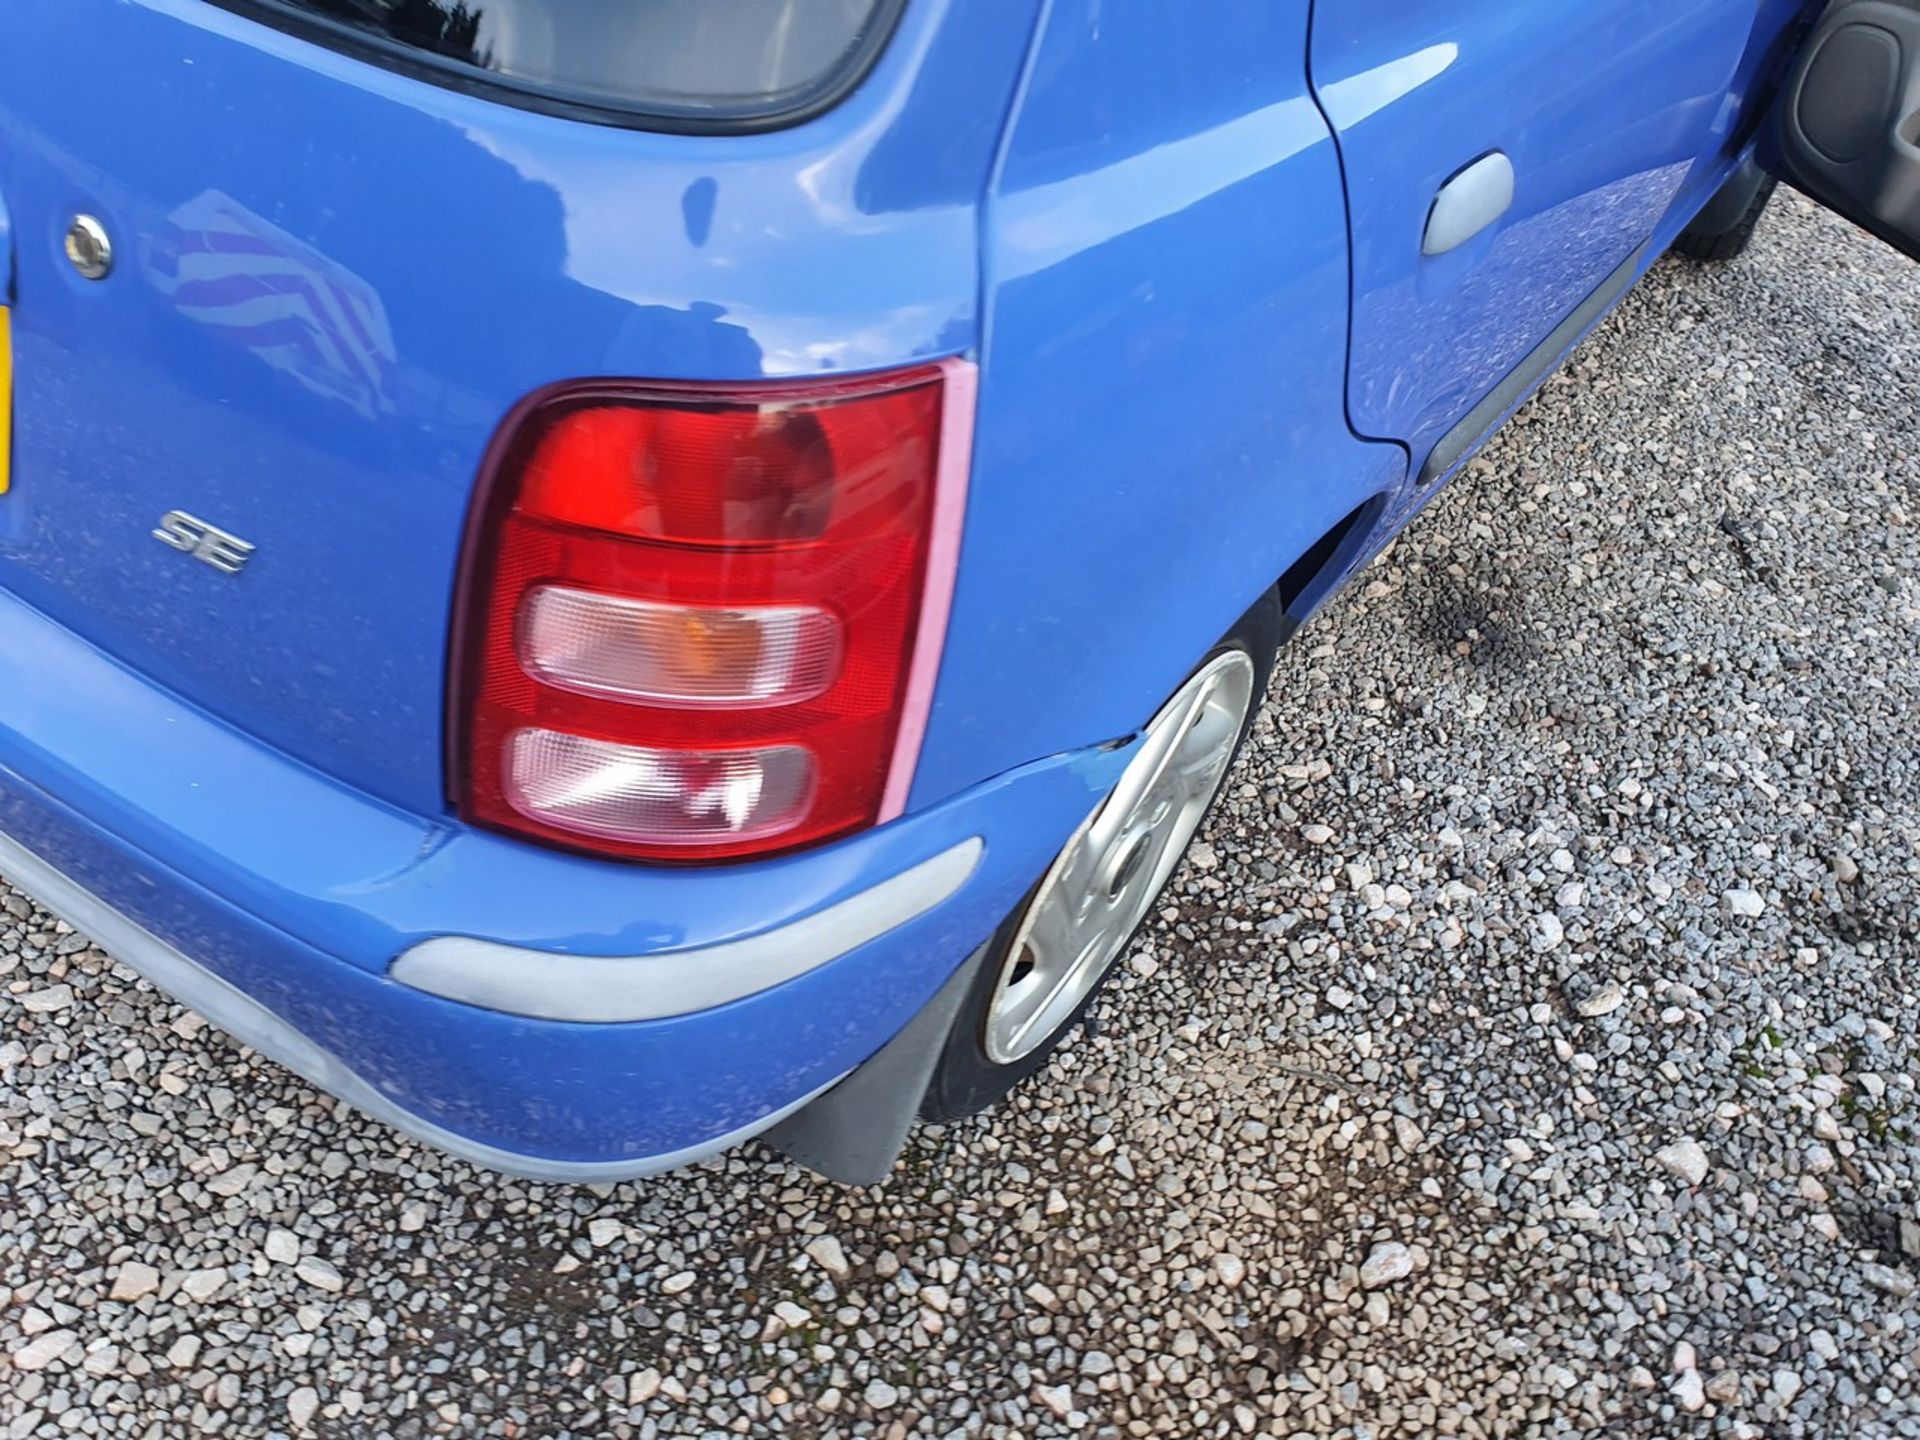 01/51 NISSAN MICRA SE 16V AUTO - 1348cc 5dr Hatchback (Blue, 44k) - Image 36 of 39